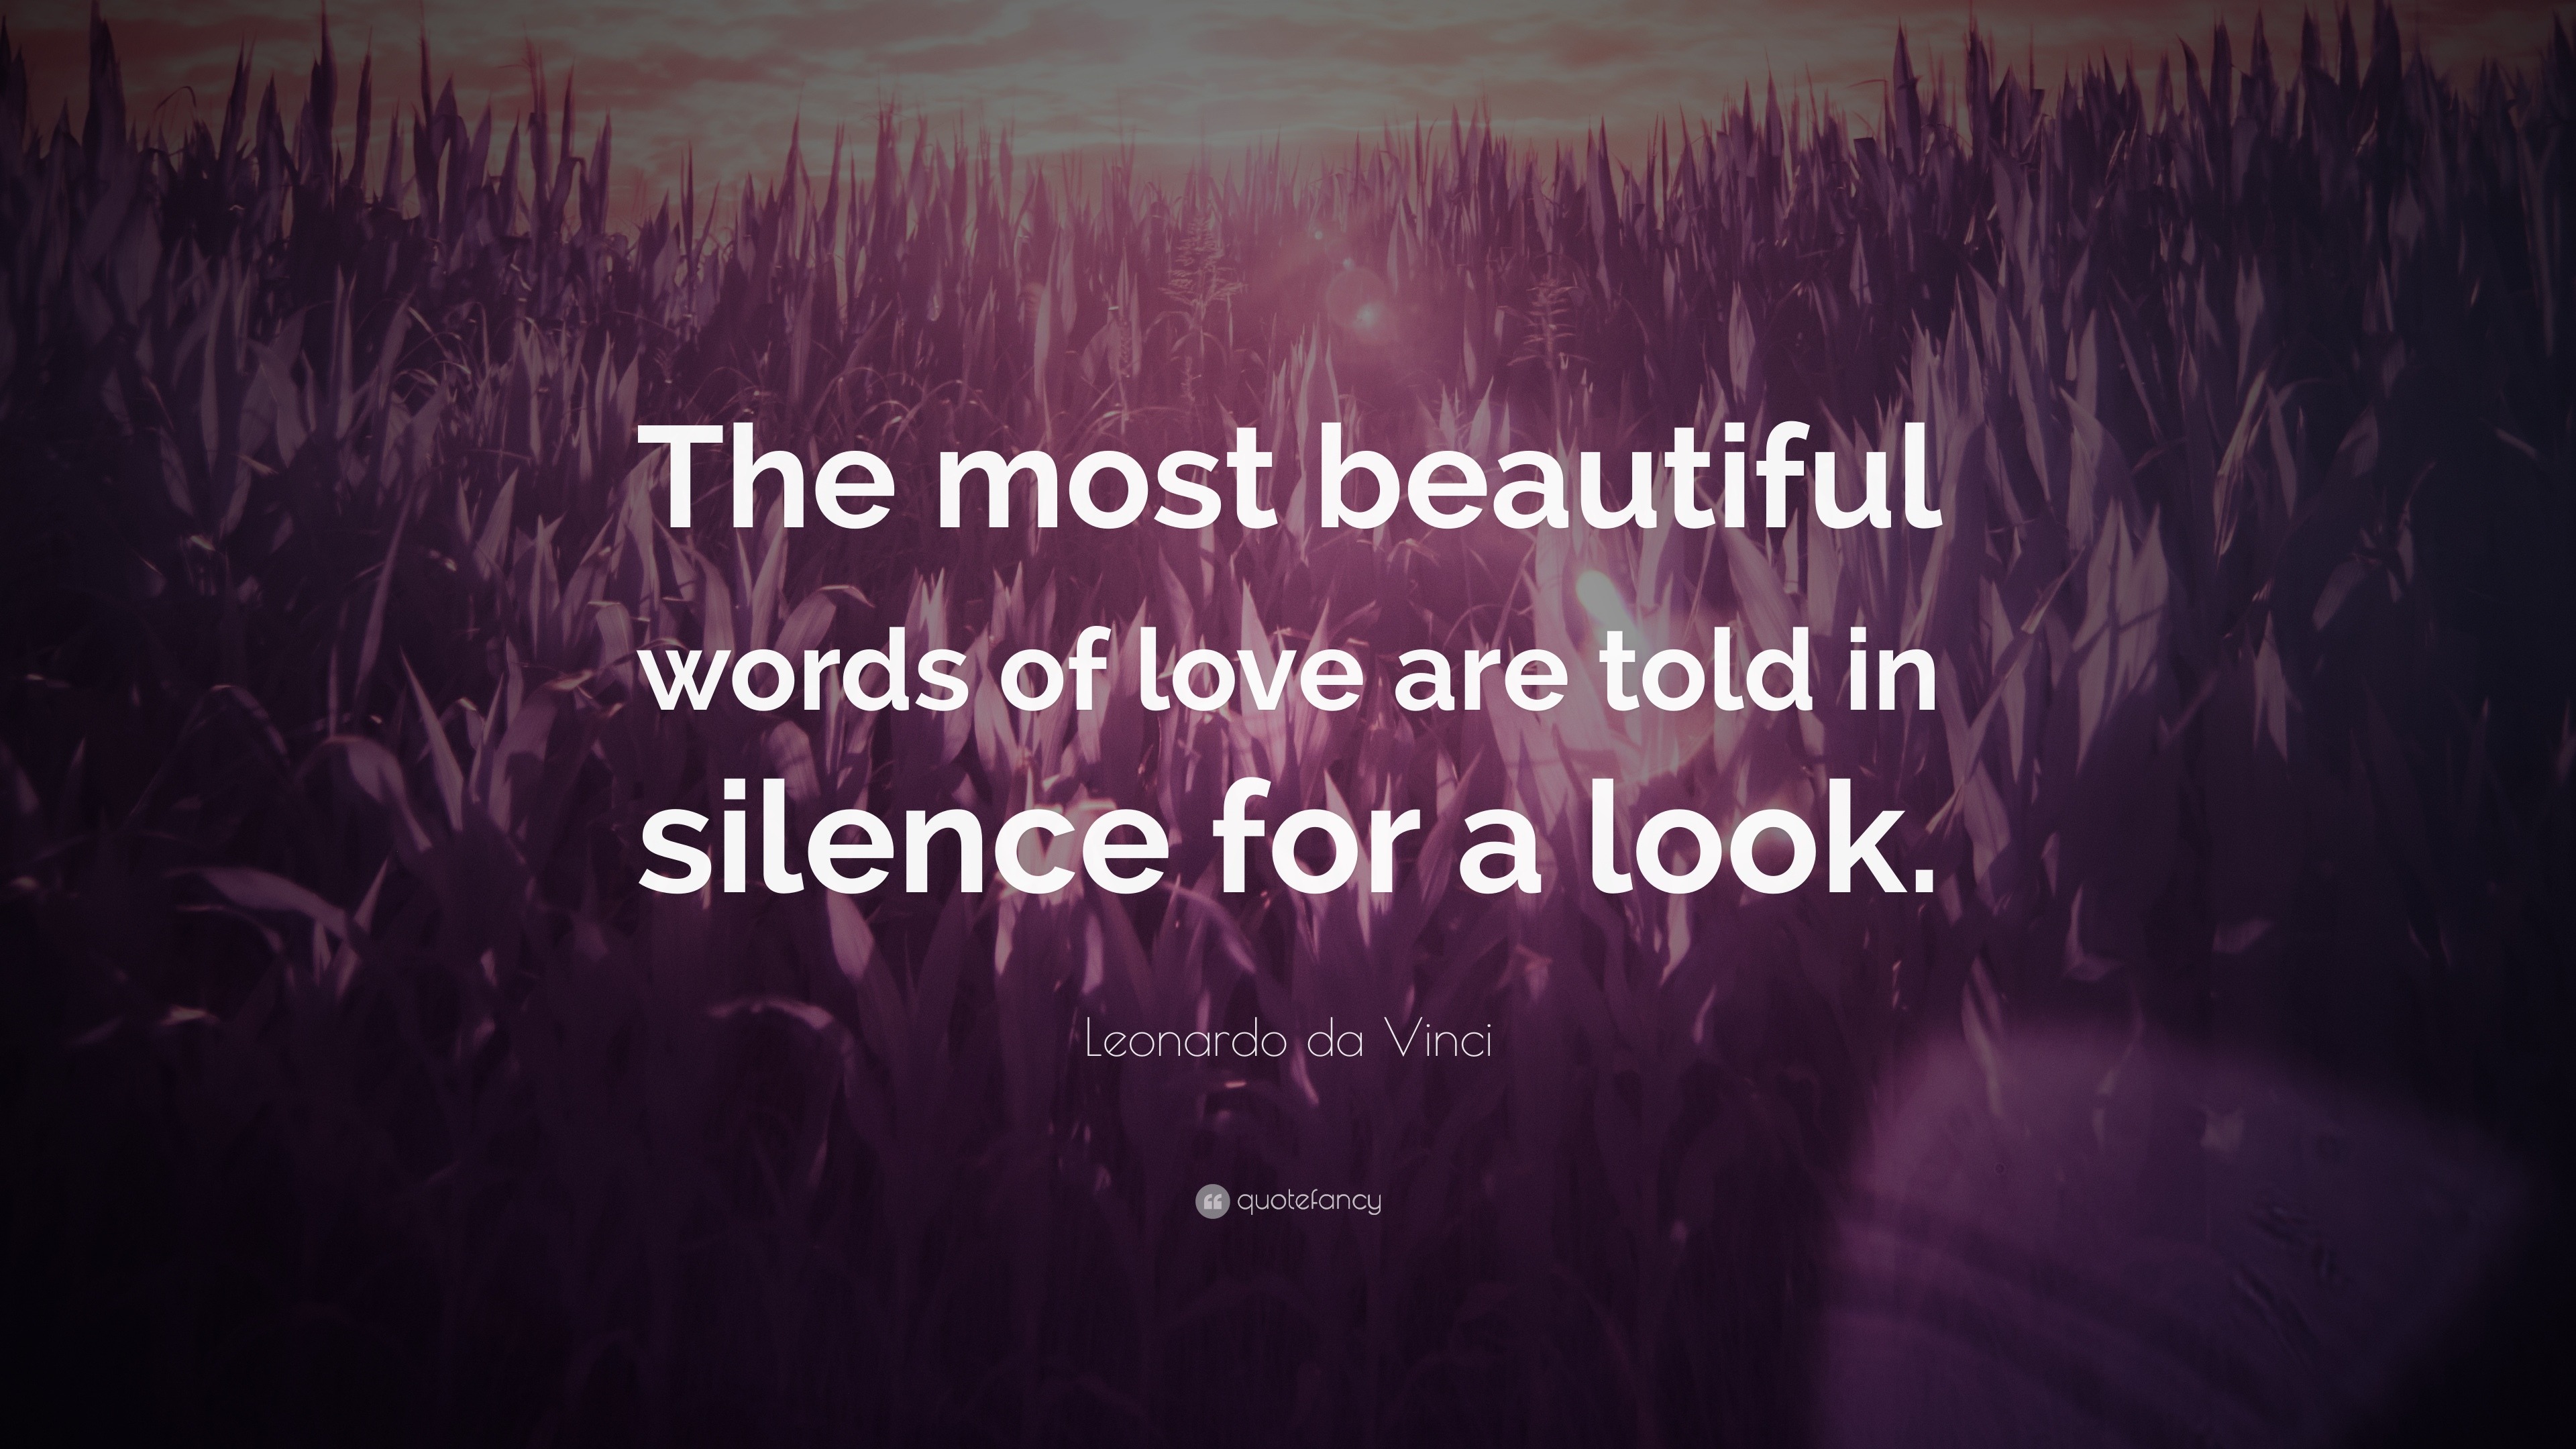 Leonardo da Vinci Quote “The most beautiful words of love are told in silence